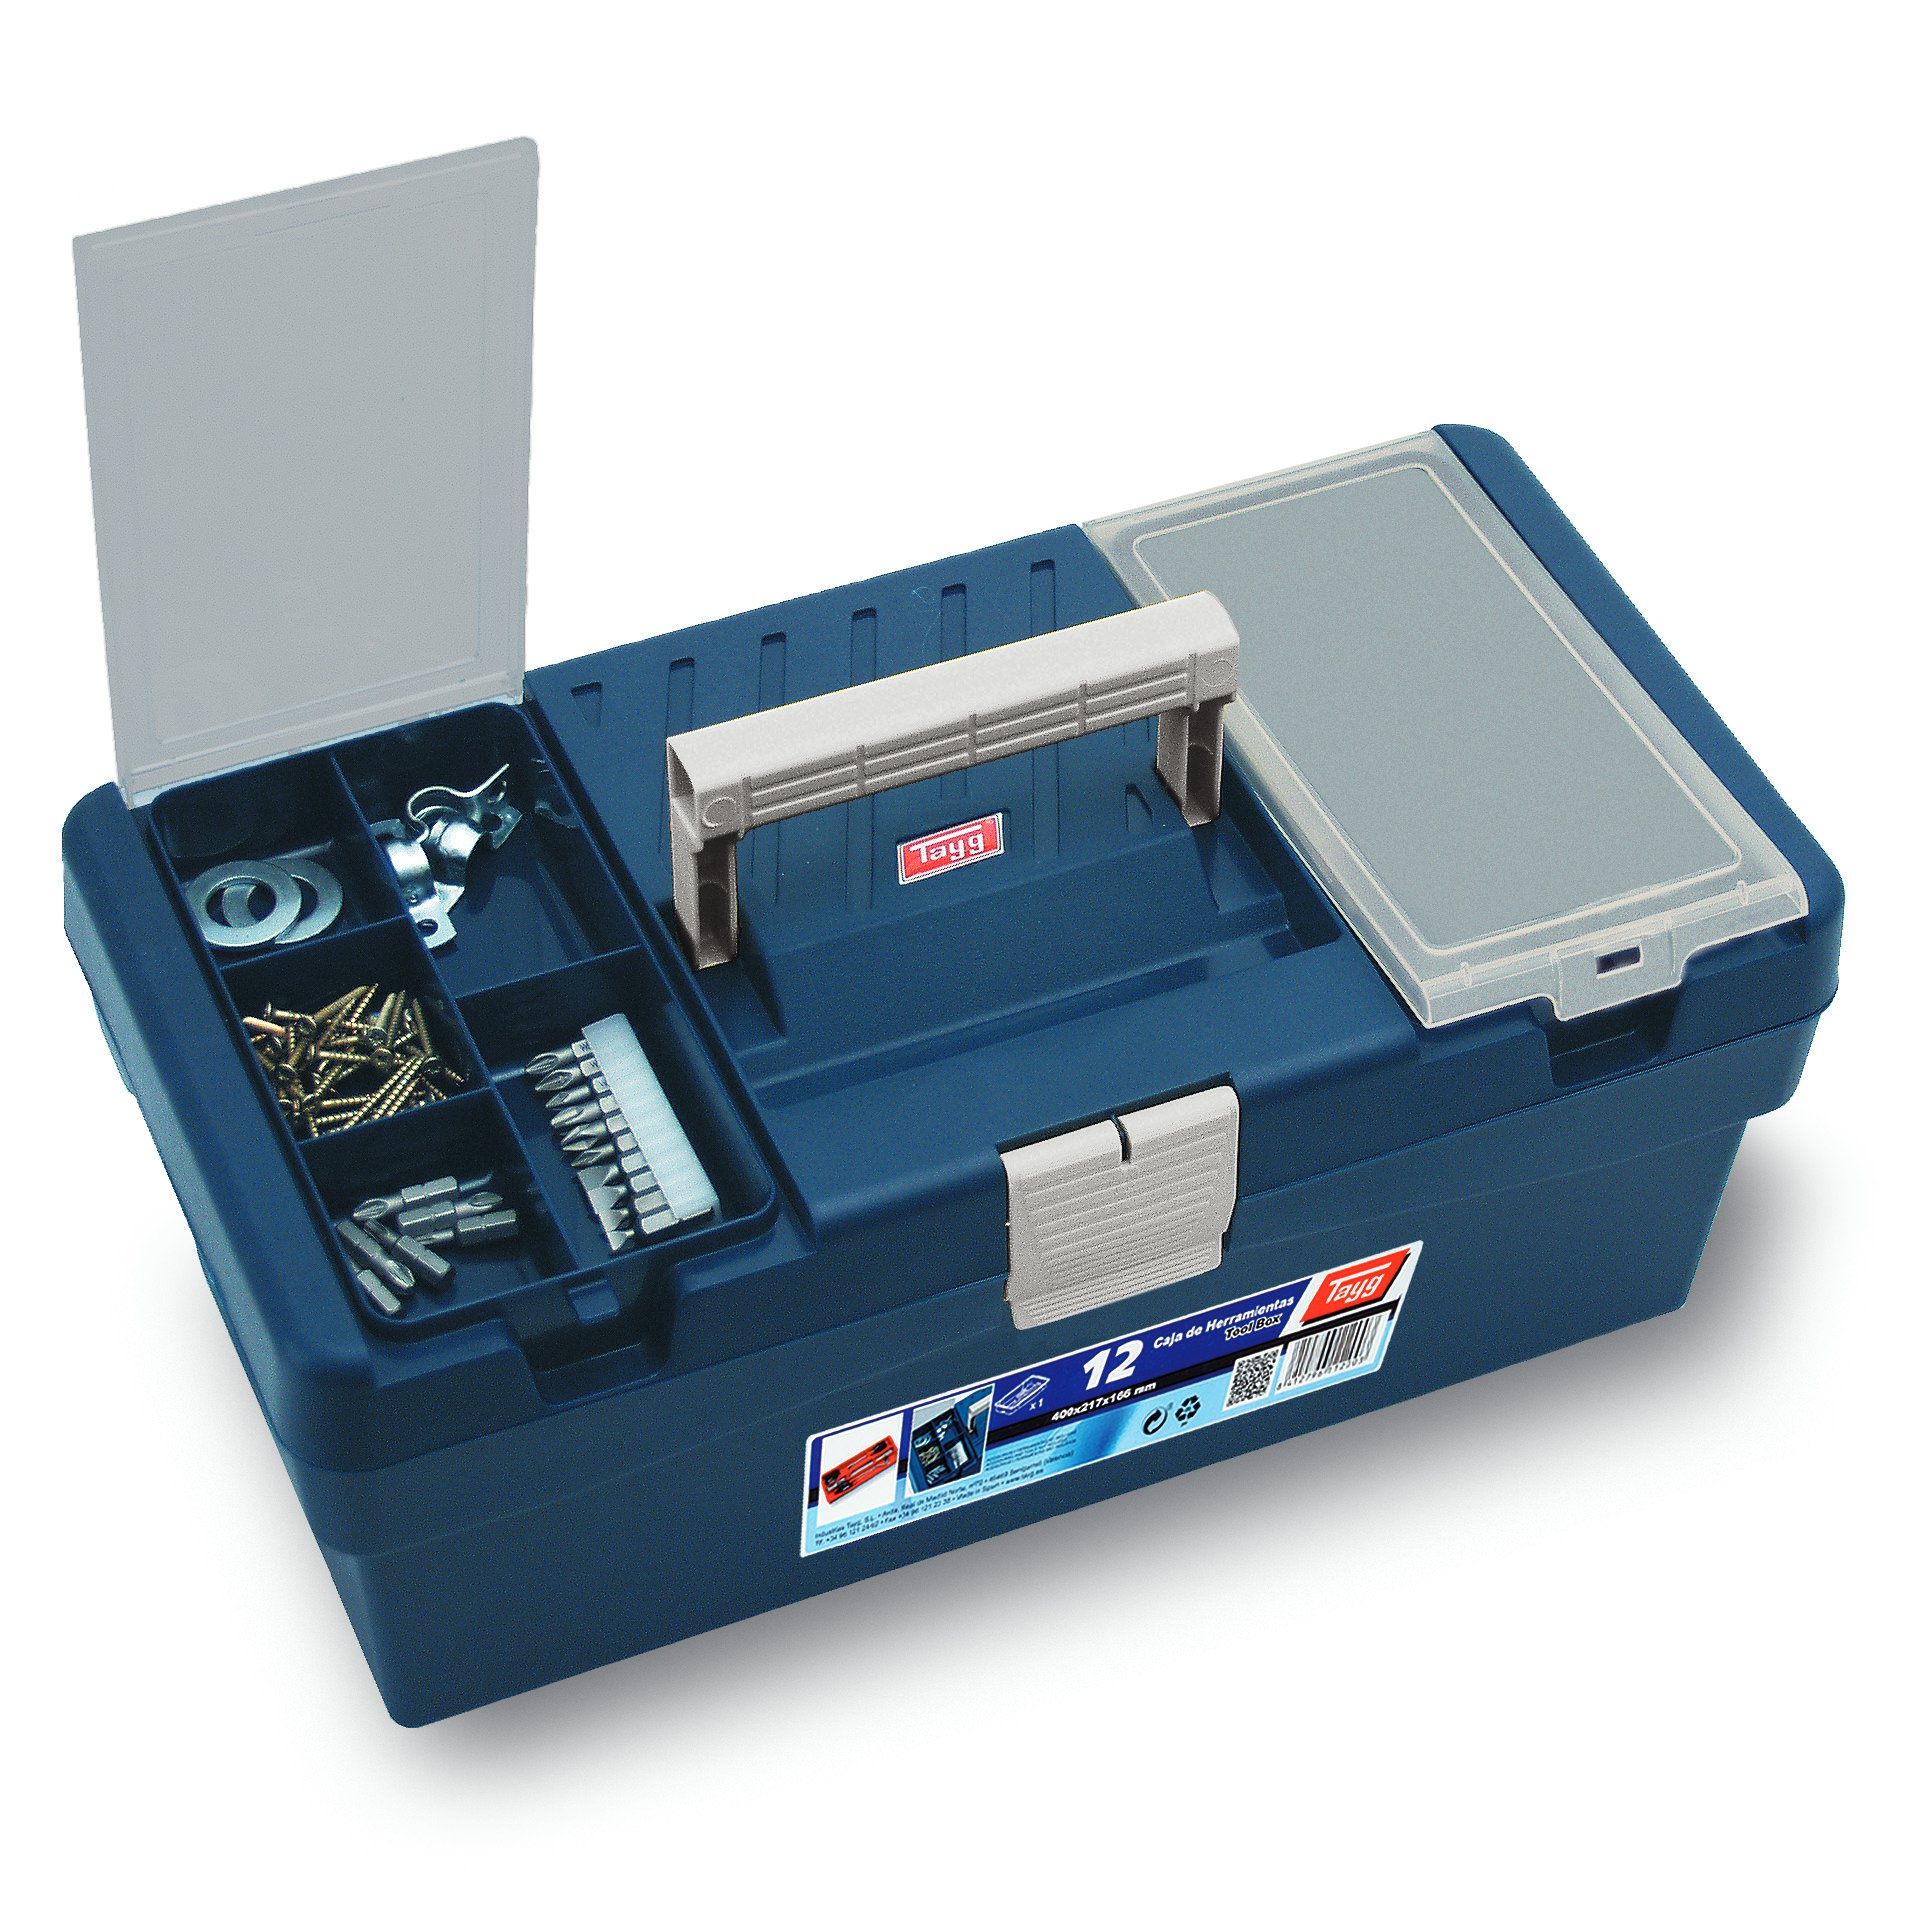 Ящик пластиковий для інструментів Tayg Box 12 Caja htas, 40х21,7х16,6 см, синій (112003) - фото 2